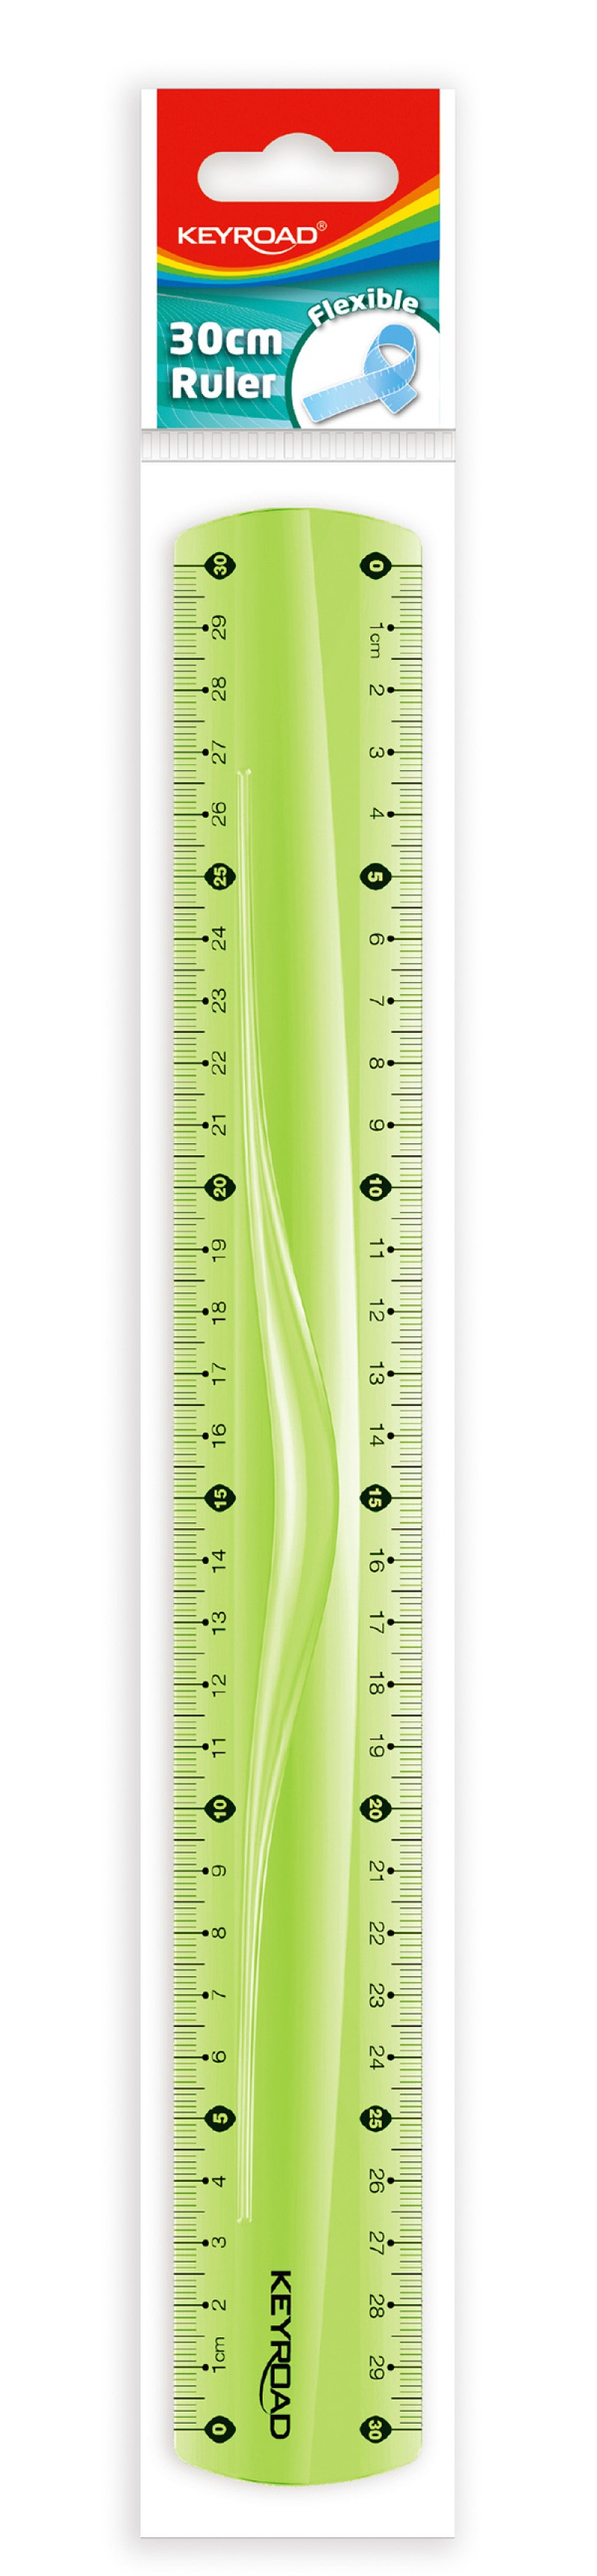 Linijka KEYROAD, 30cm, elastyczna, zawieszka, mix kolorów - zdjęcie (2